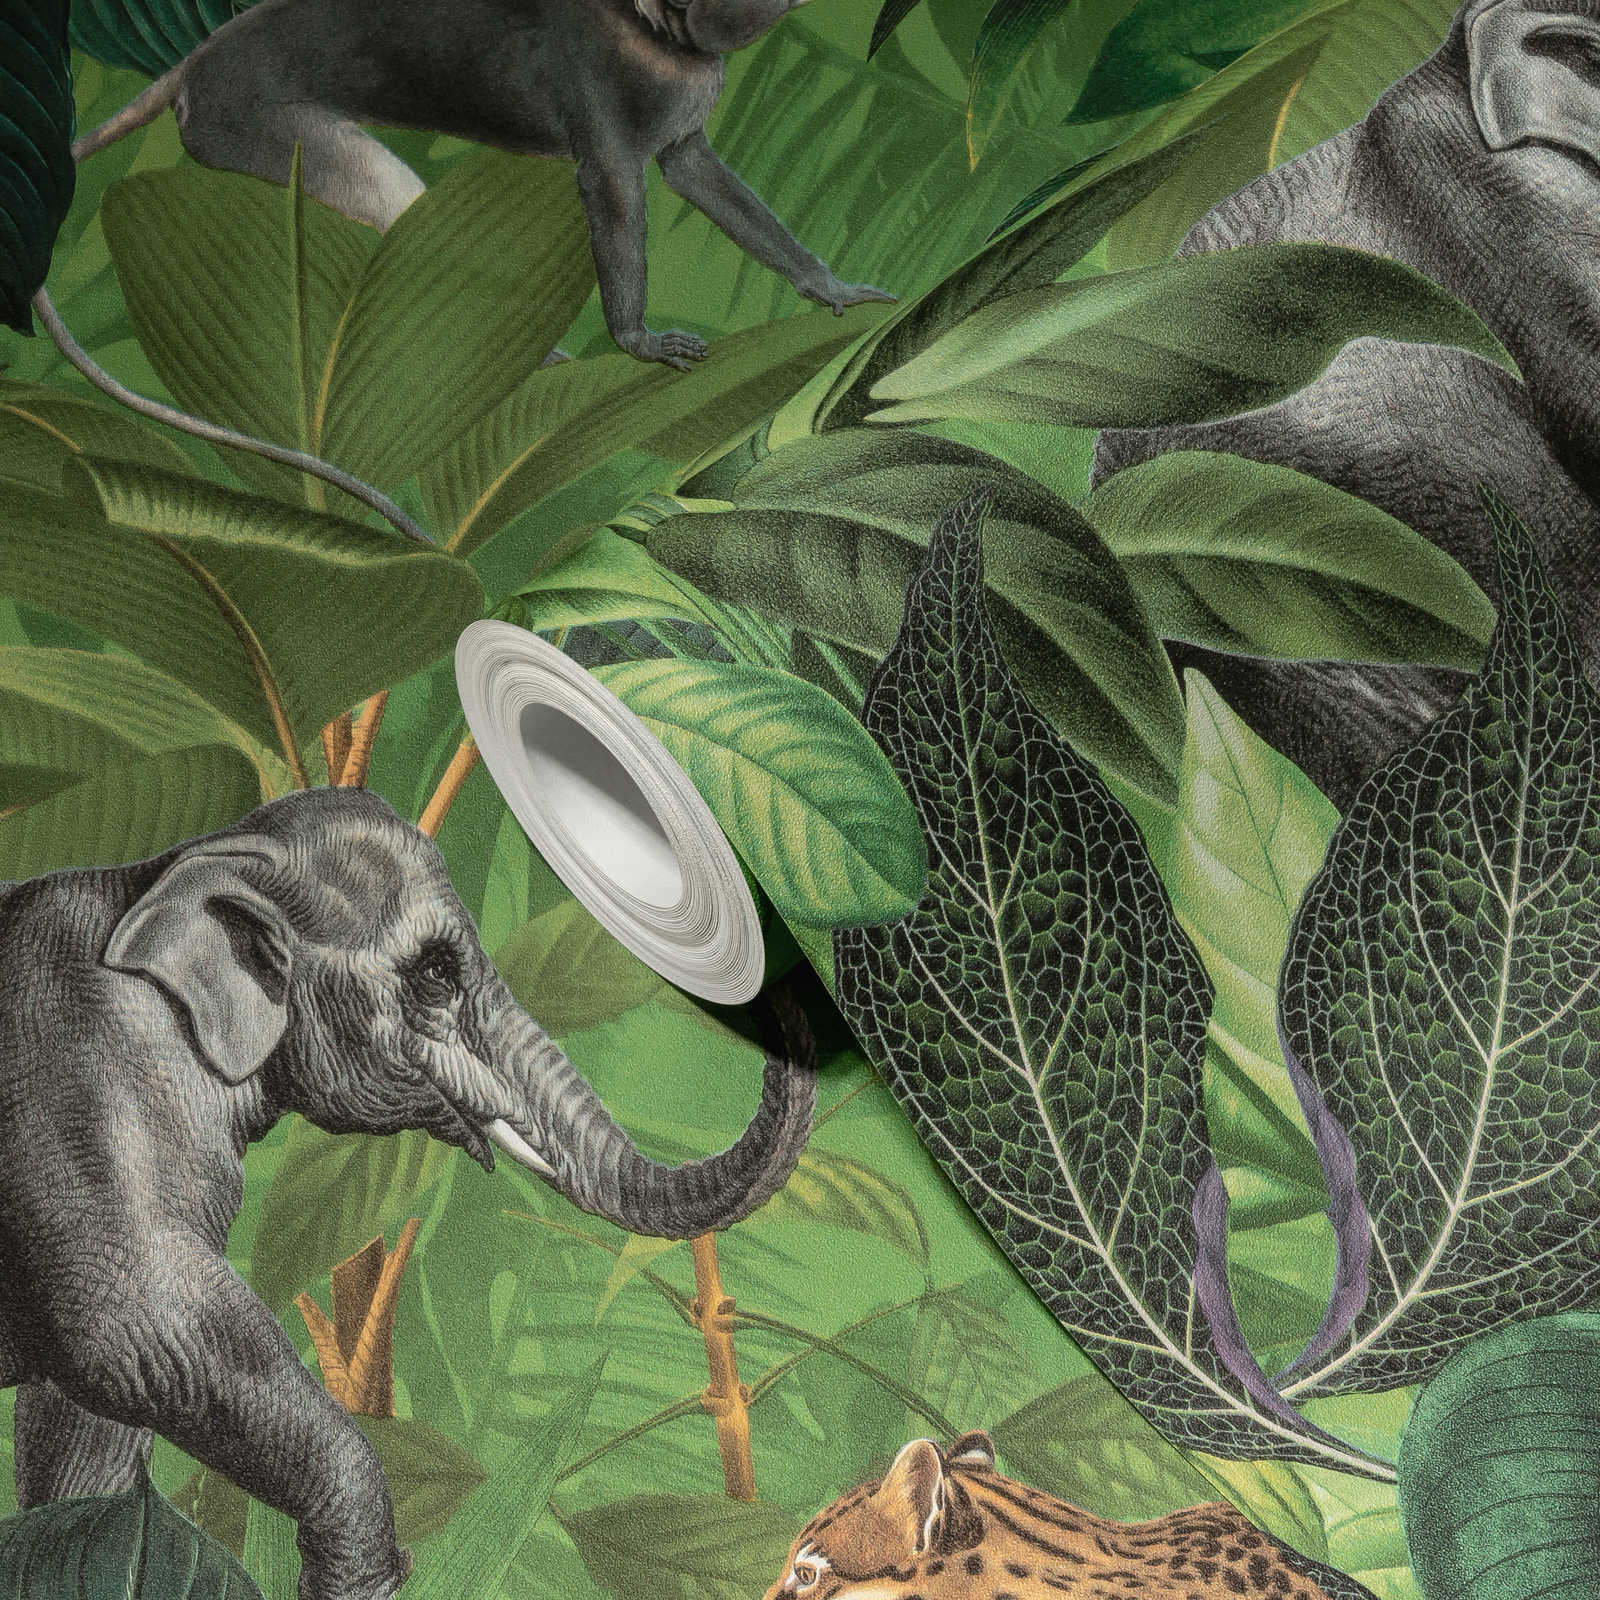             Dschungel Tapete mit Tieren, Kindermotiv – Grün
        